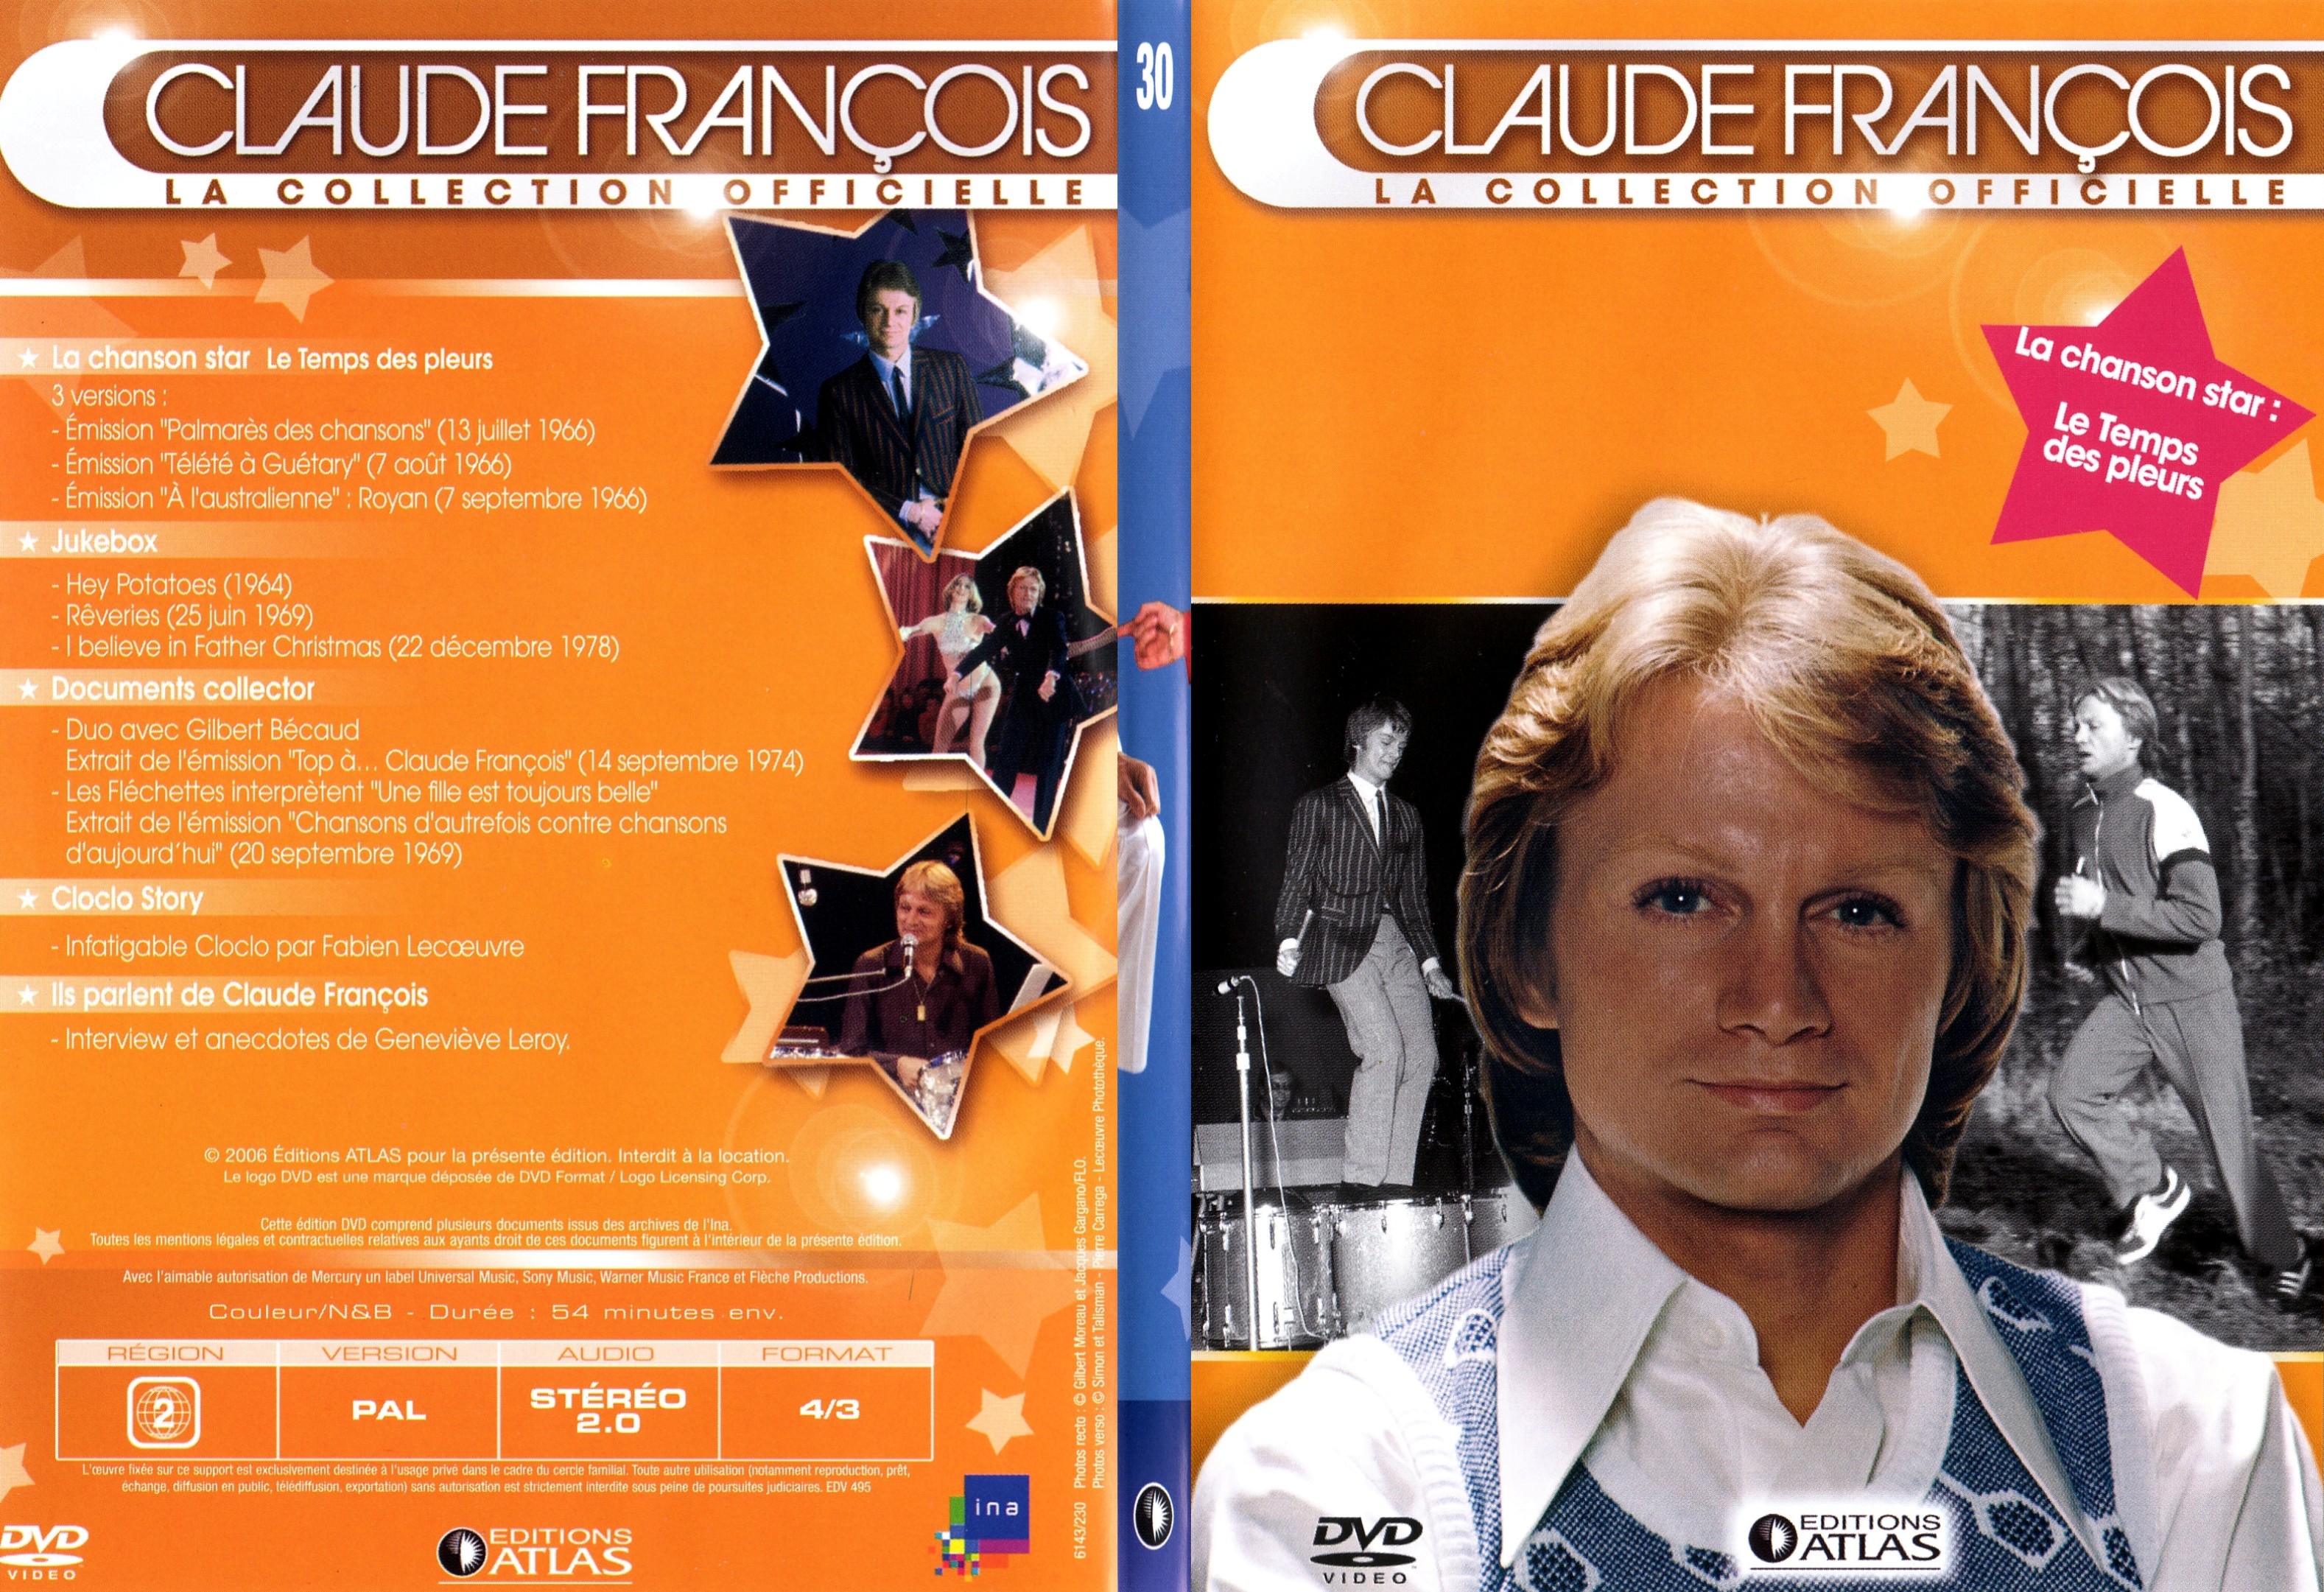 Jaquette DVD Claude francois le collection officielle vol 30 - SLIM